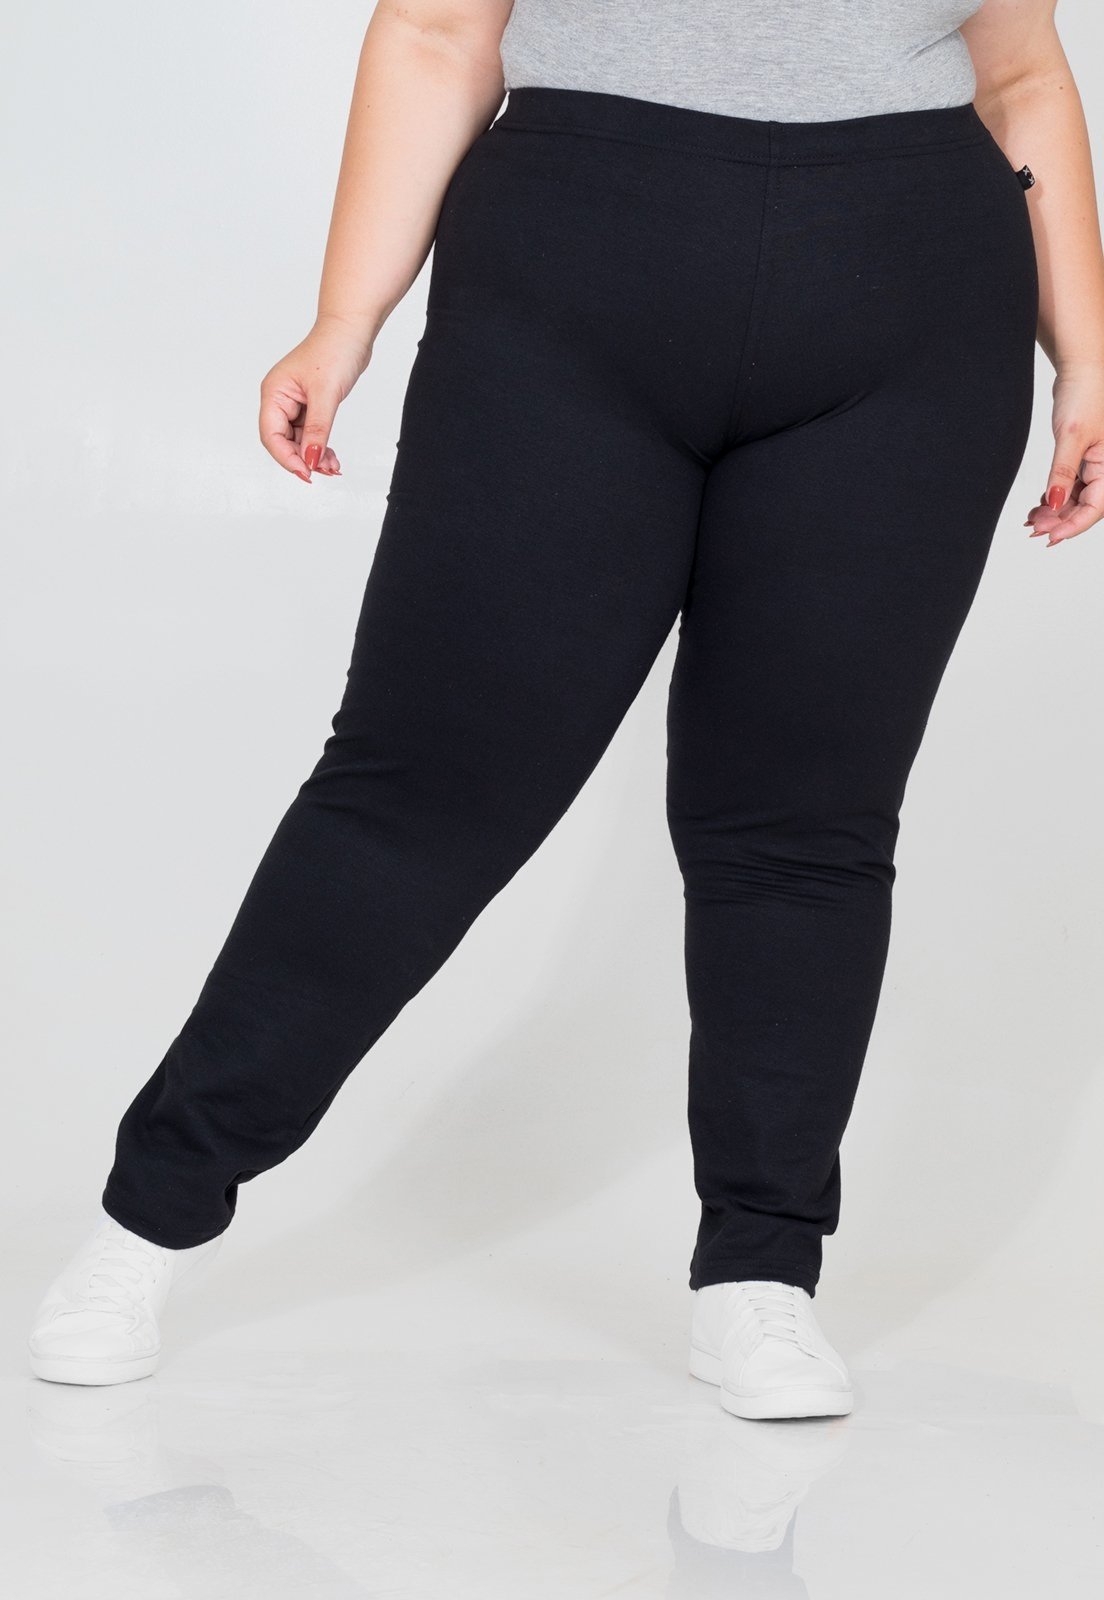 Calça Plus Size Feminina Legging Fitness Costa Rica - Compre Agora